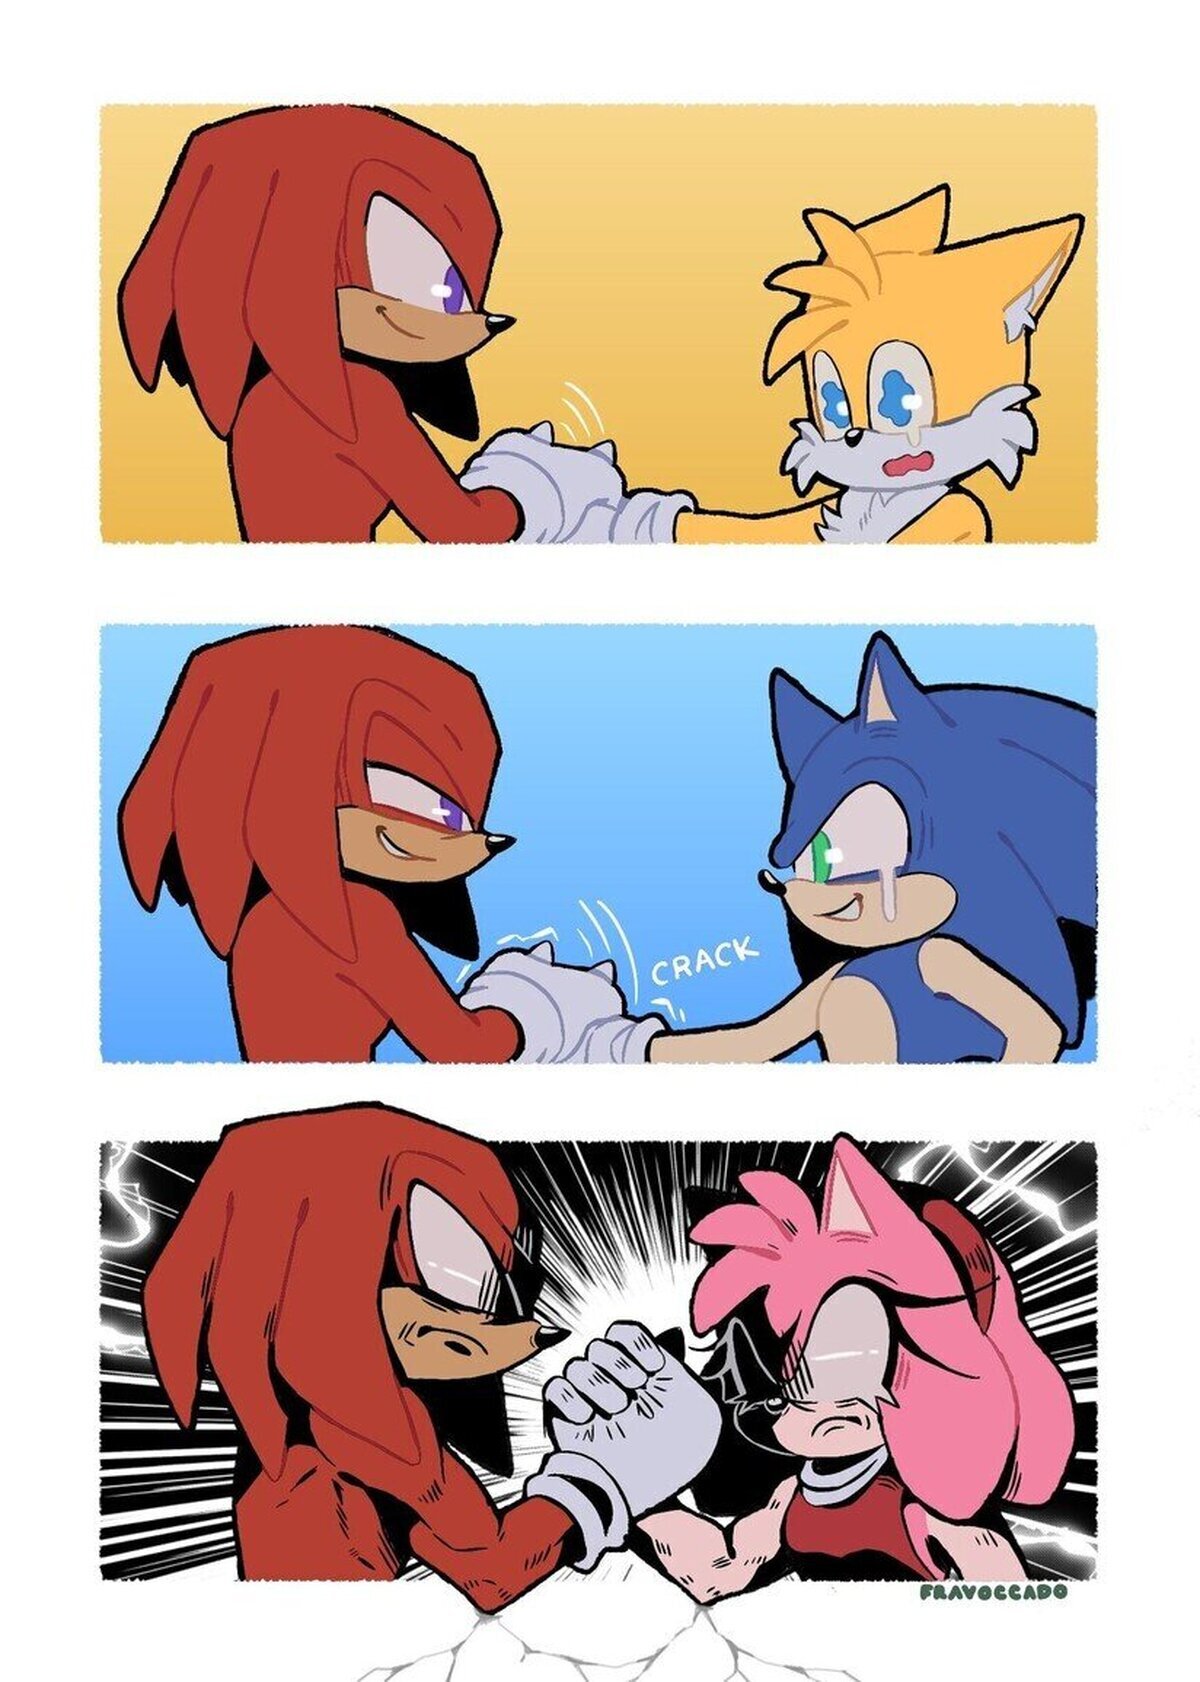 Amy no deja que humillen a Sonic